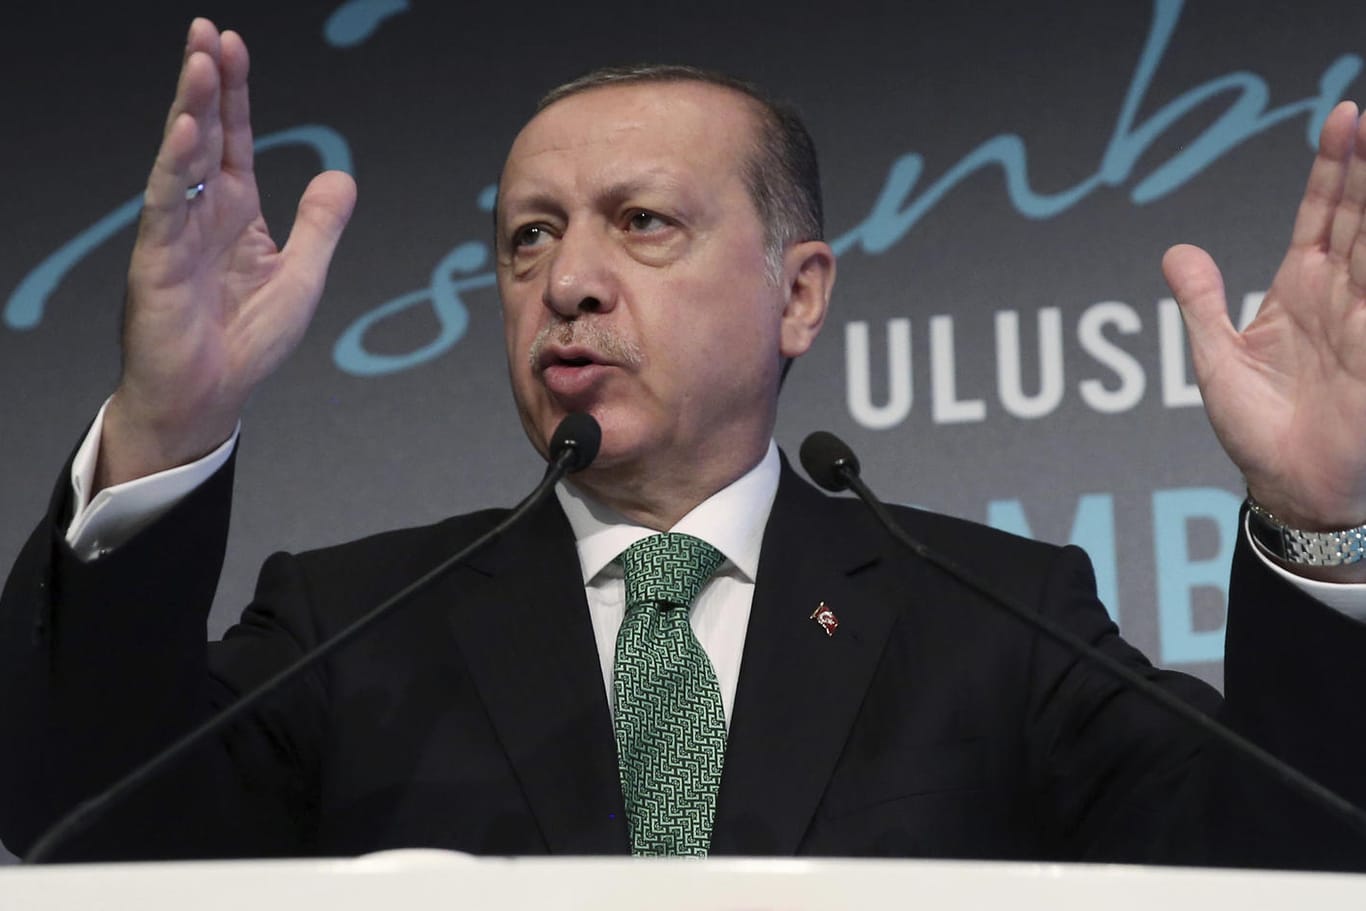 Der türkische Präsident Recep Tayyip Erdogan kritisiert mit deutlichen Wort das Unabhängigkeitsreferendum der Kurden im Nordirak.